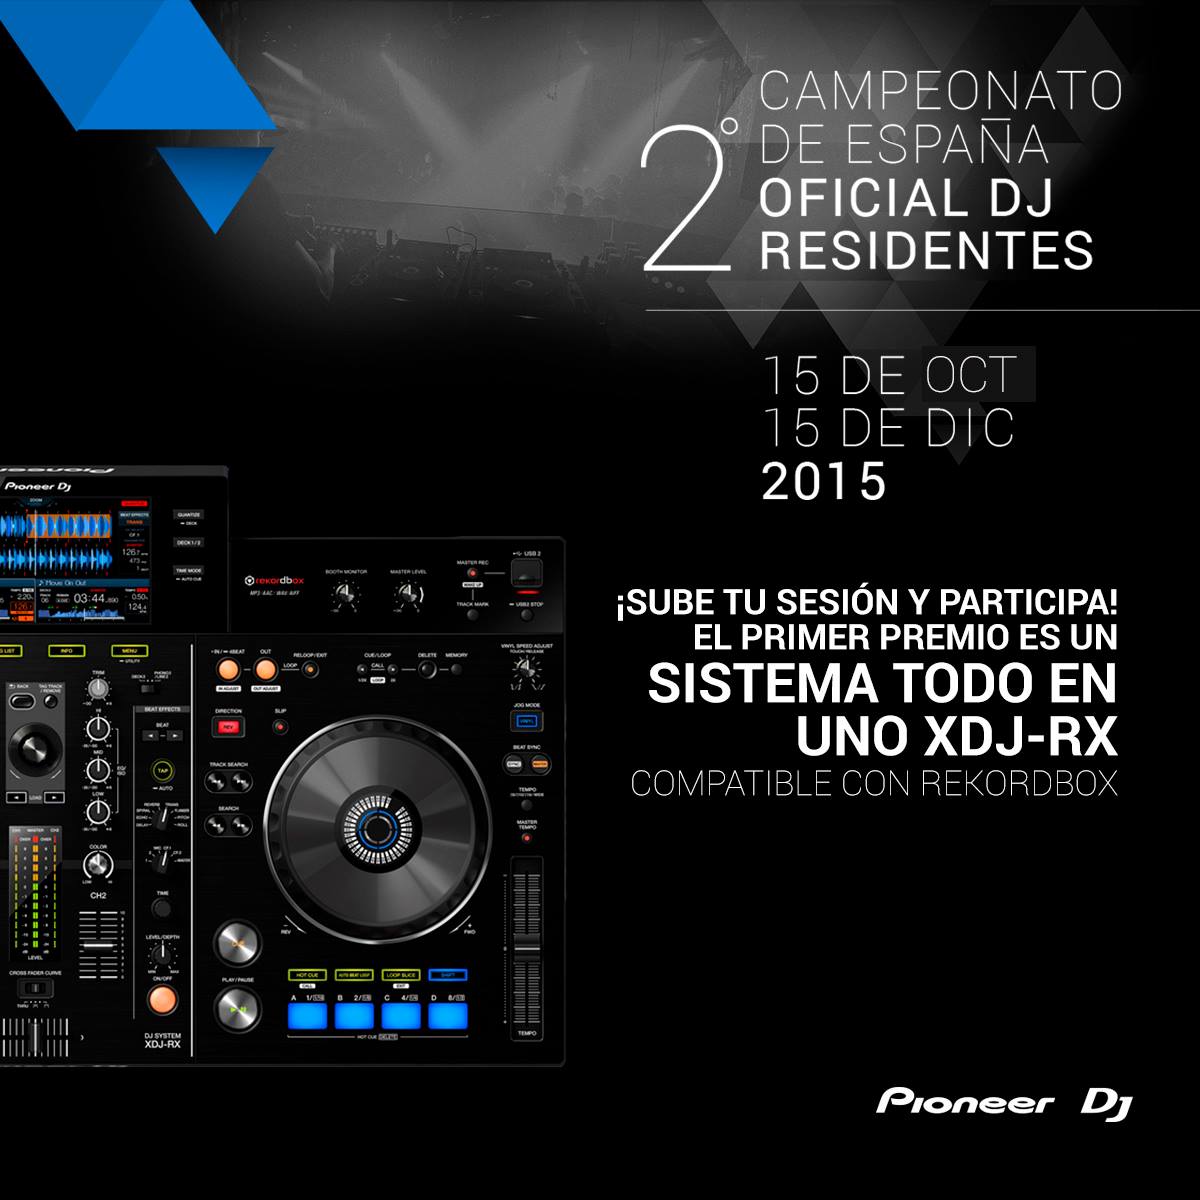 2º Campeonato Oficial de DJ Residentes Pioneer España